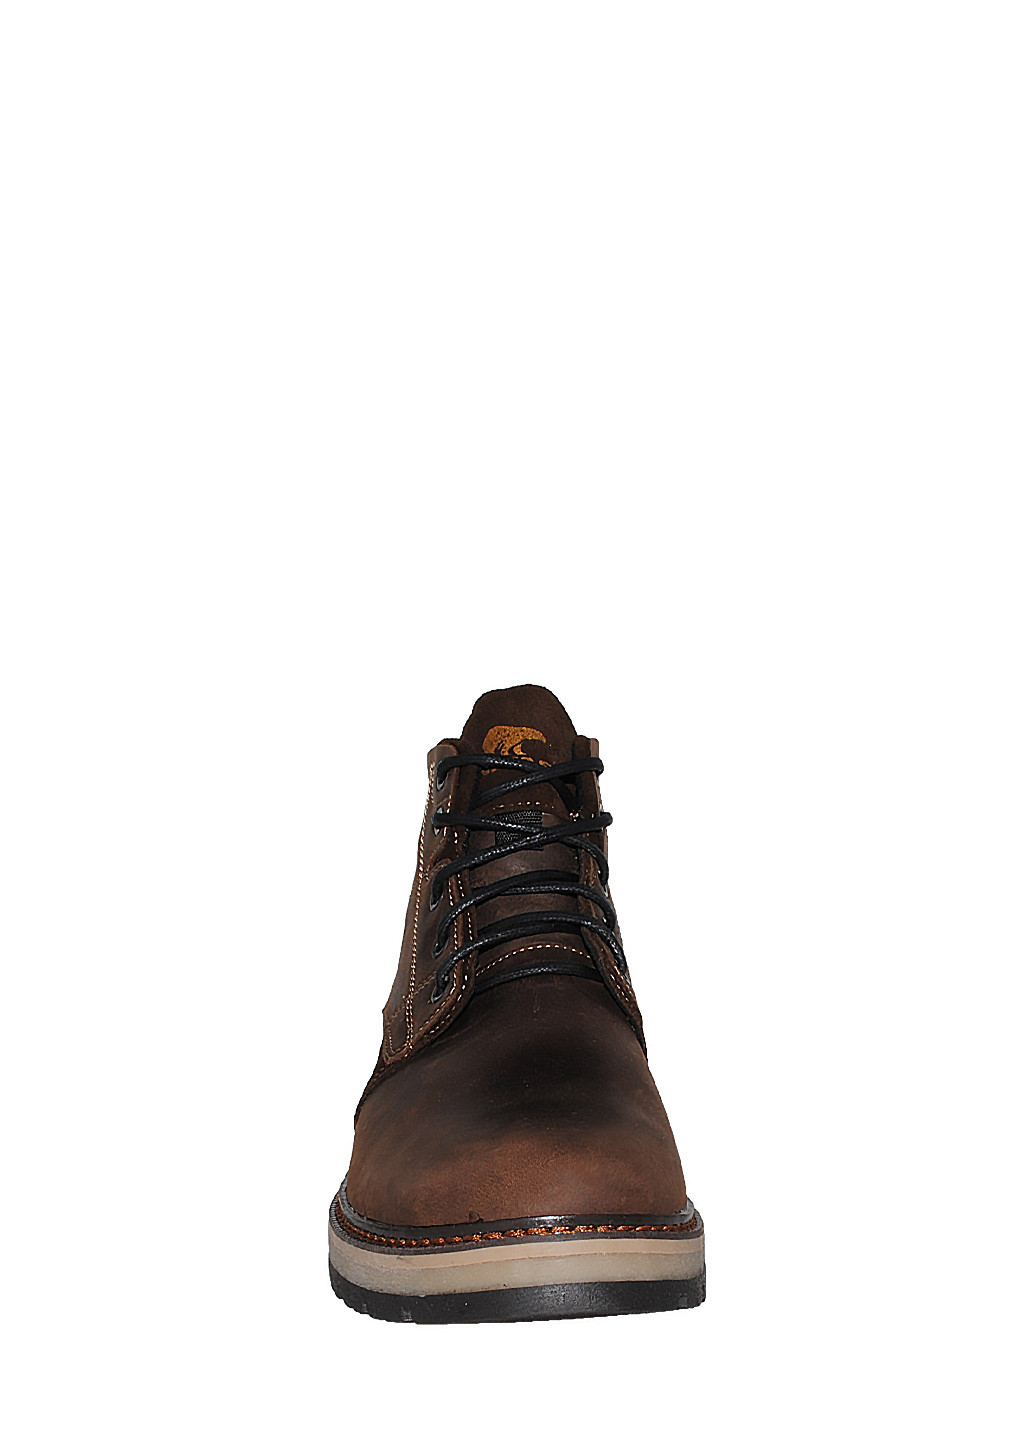 Коричневые зимние ботинки r44 коричневый Nivas